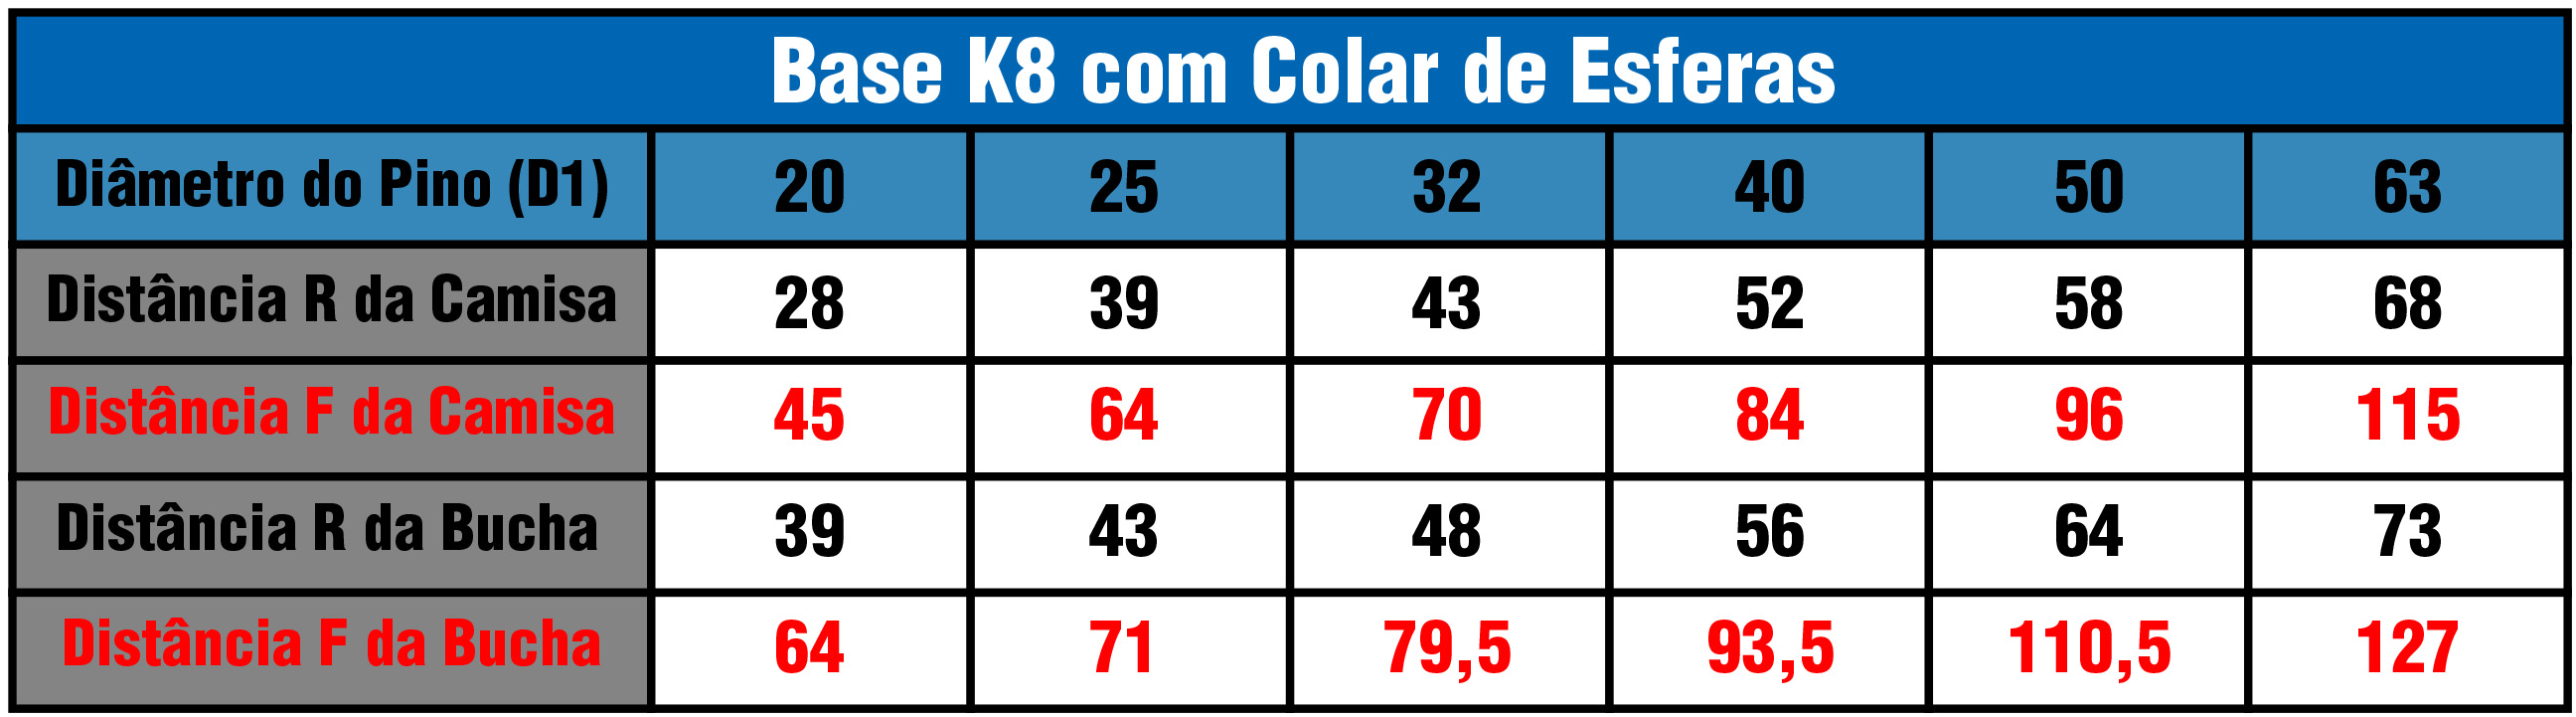 Tabela Base K8G